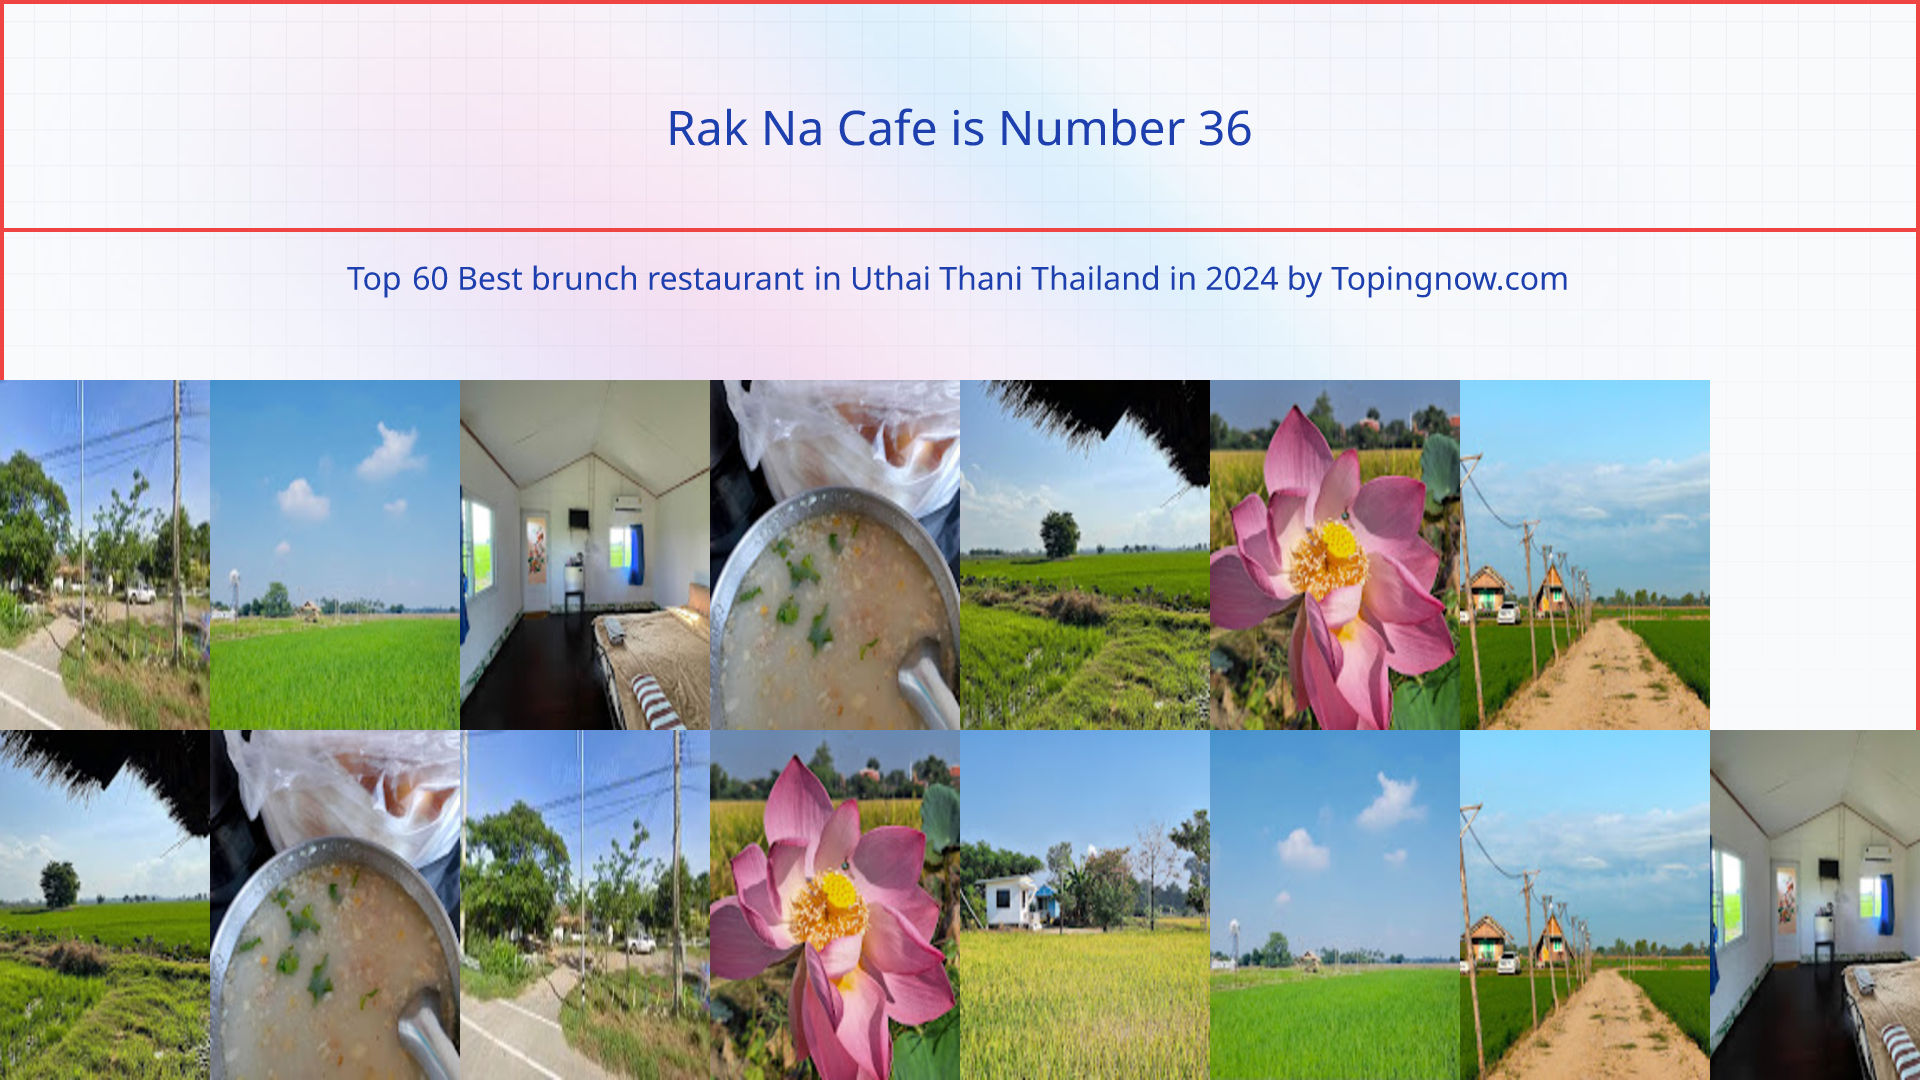 Rak Na Cafe: Top 60 Best brunch restaurant in Uthai Thani Thailand in 2024